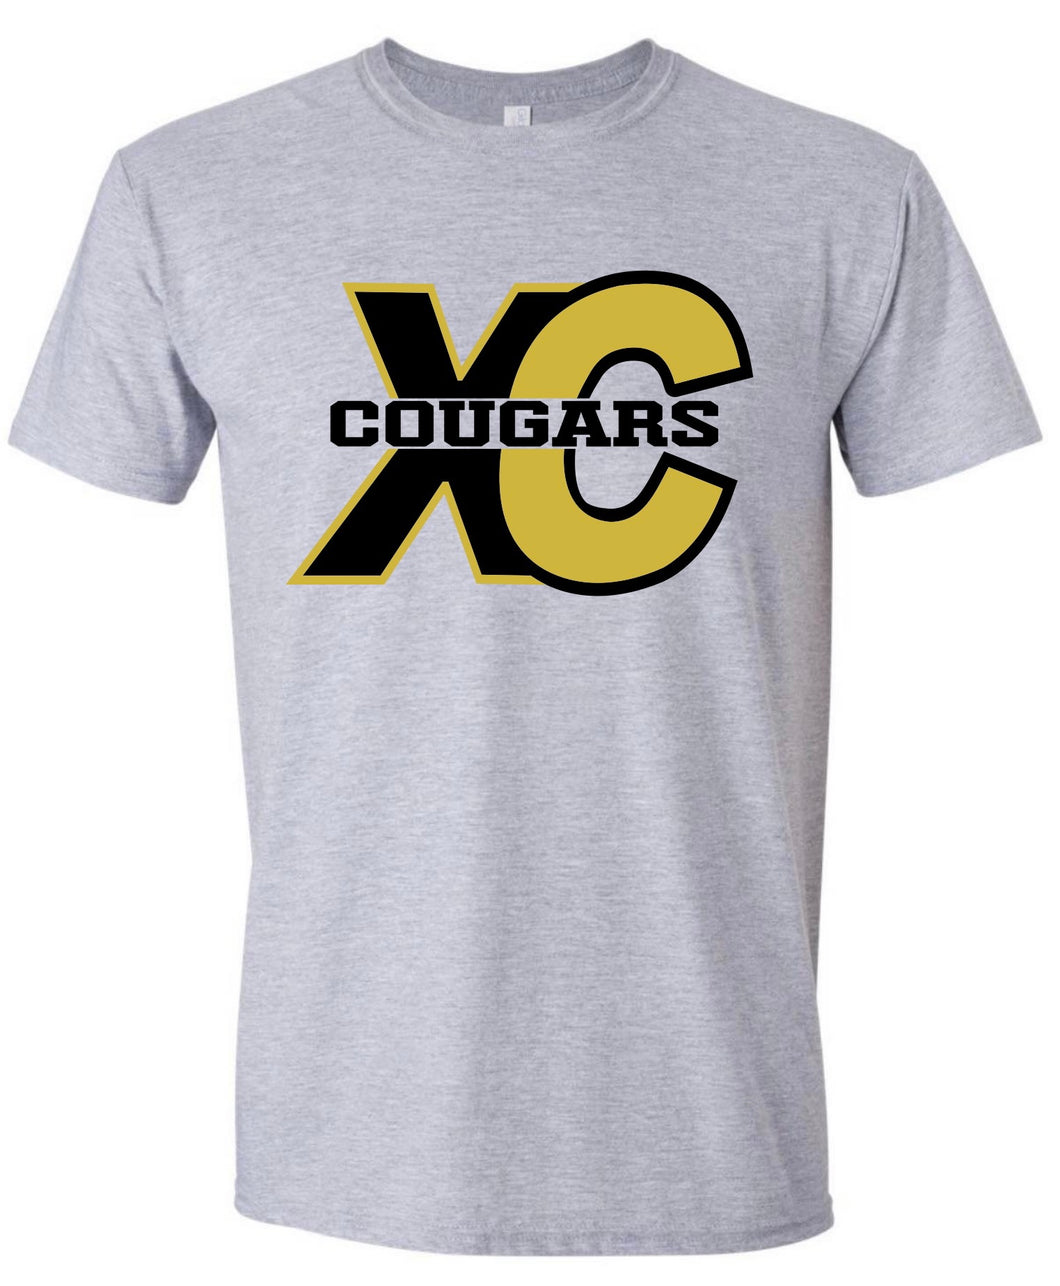 COUGARS XC Tshirt